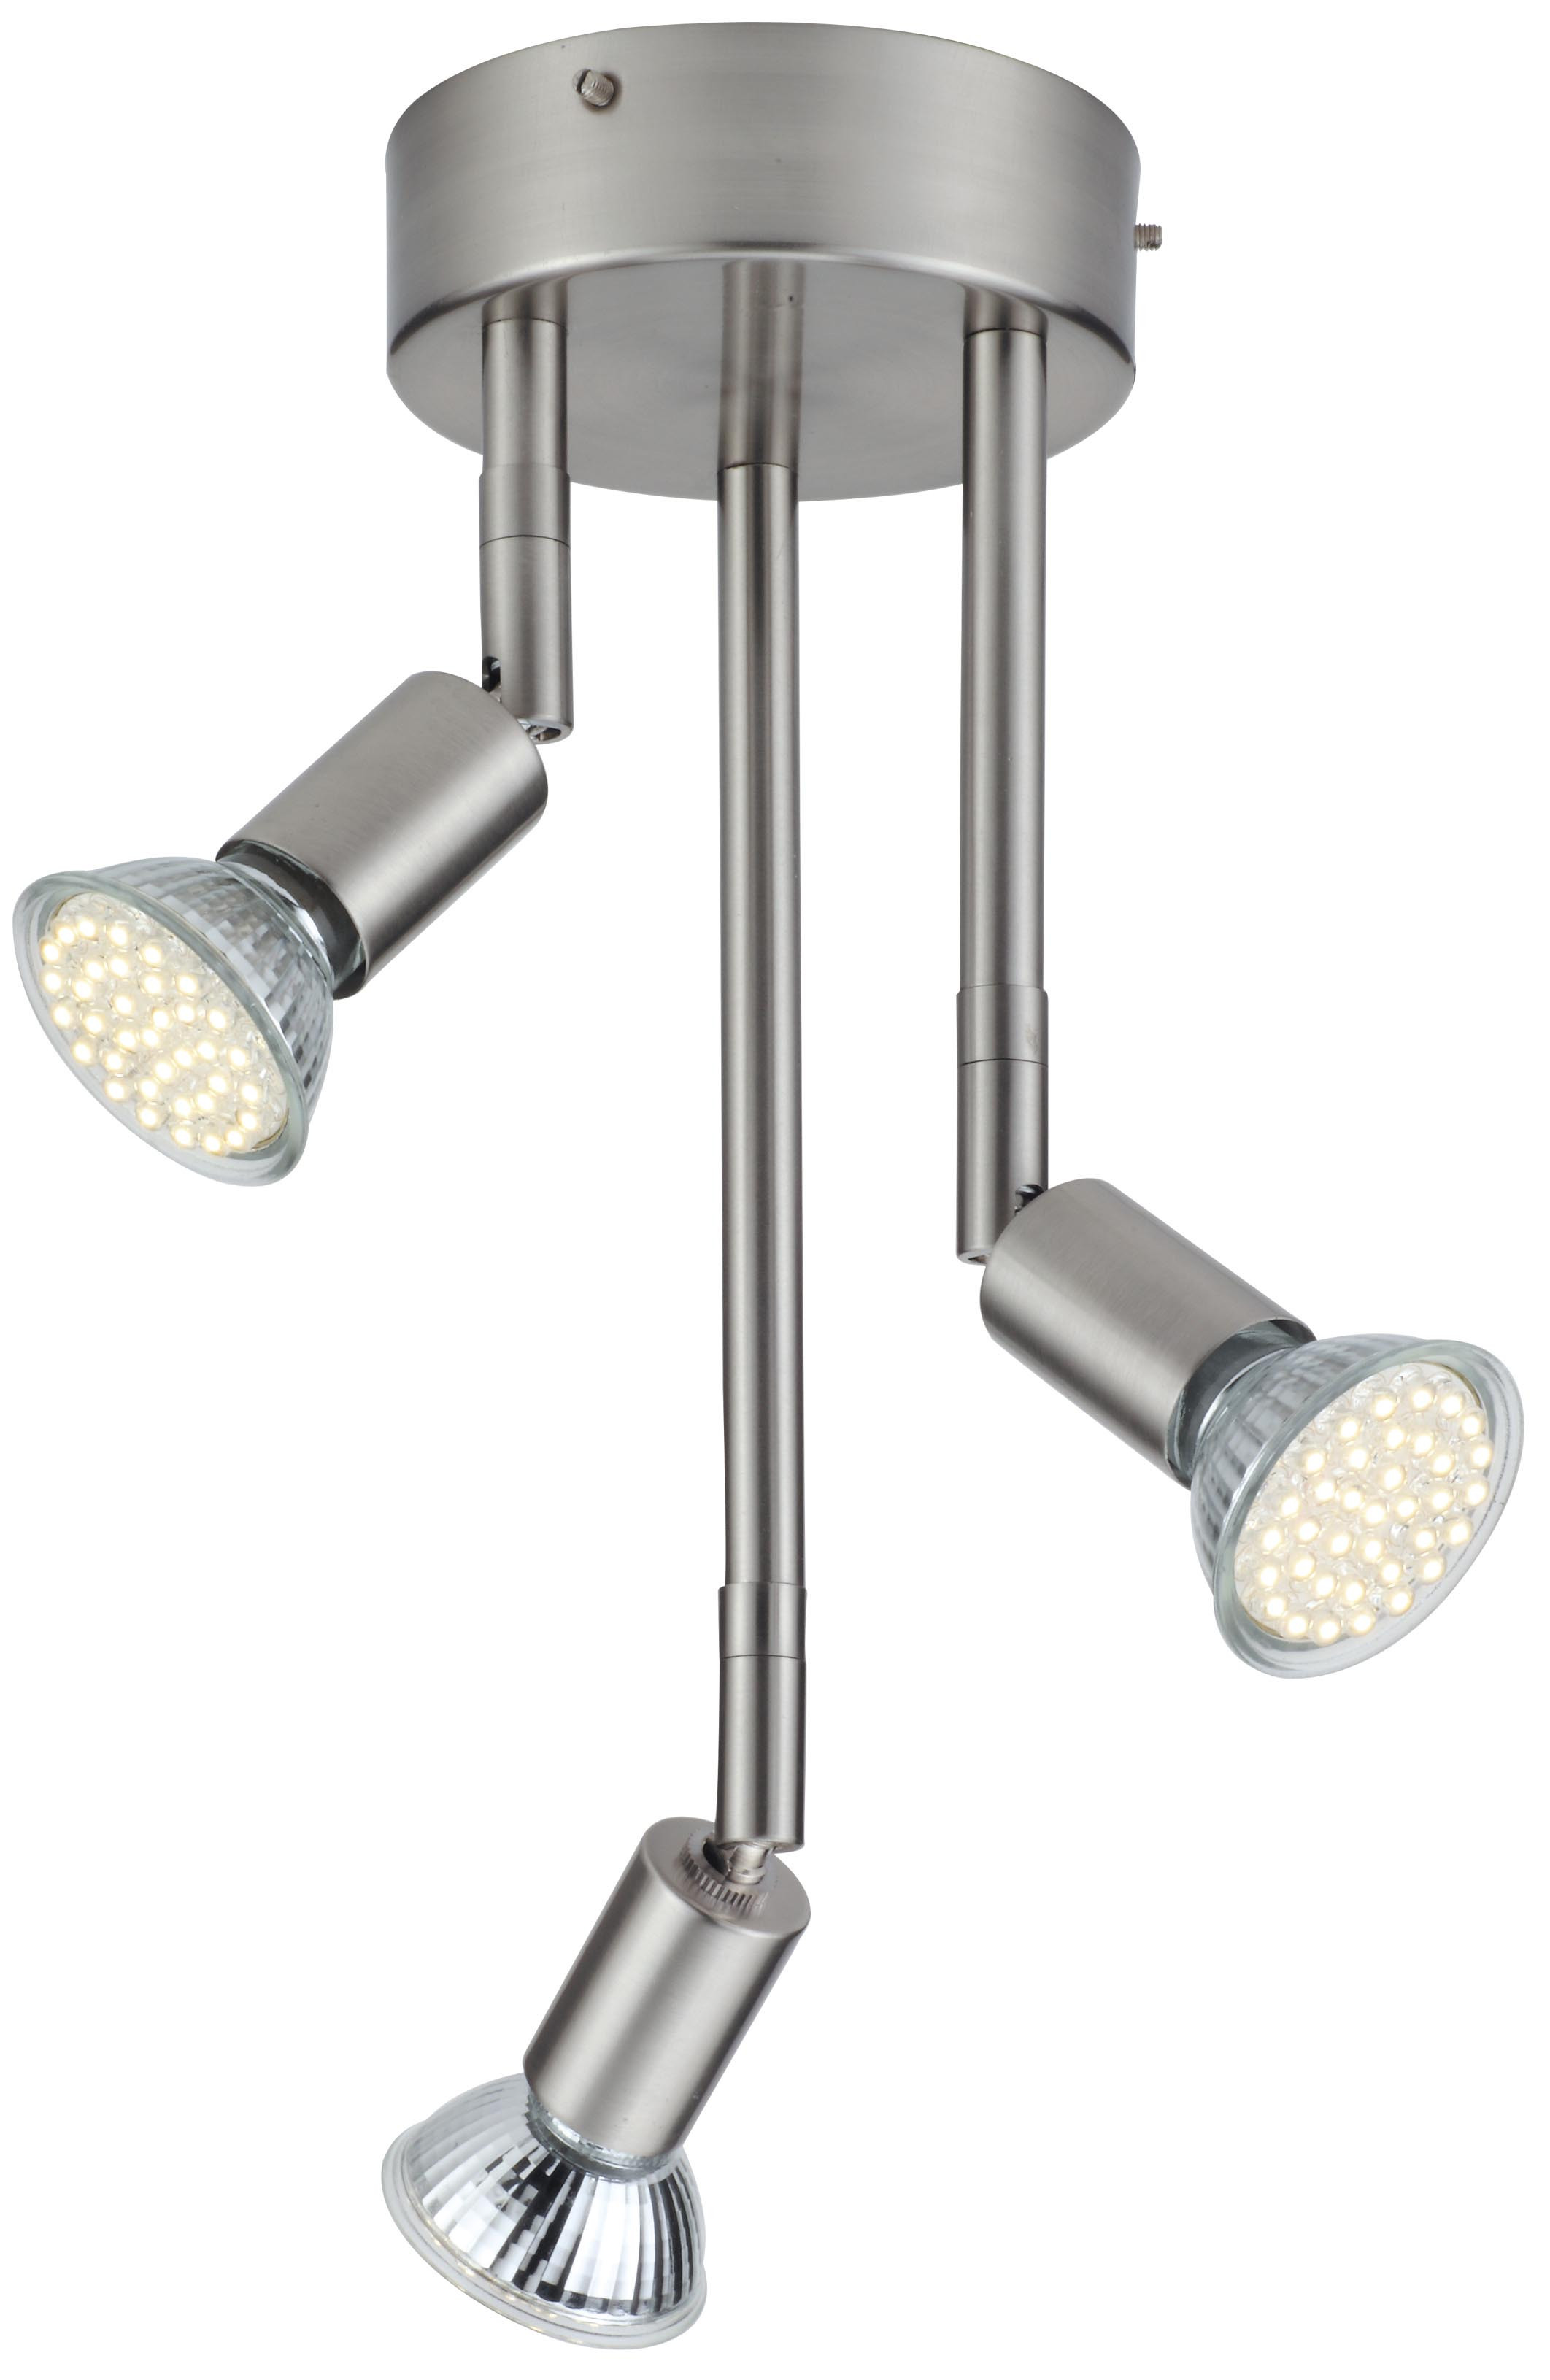 Ip44 Lampe
 TP24 5013 Texas IP44 3 X 3 5W LED lampe spot plafond satin